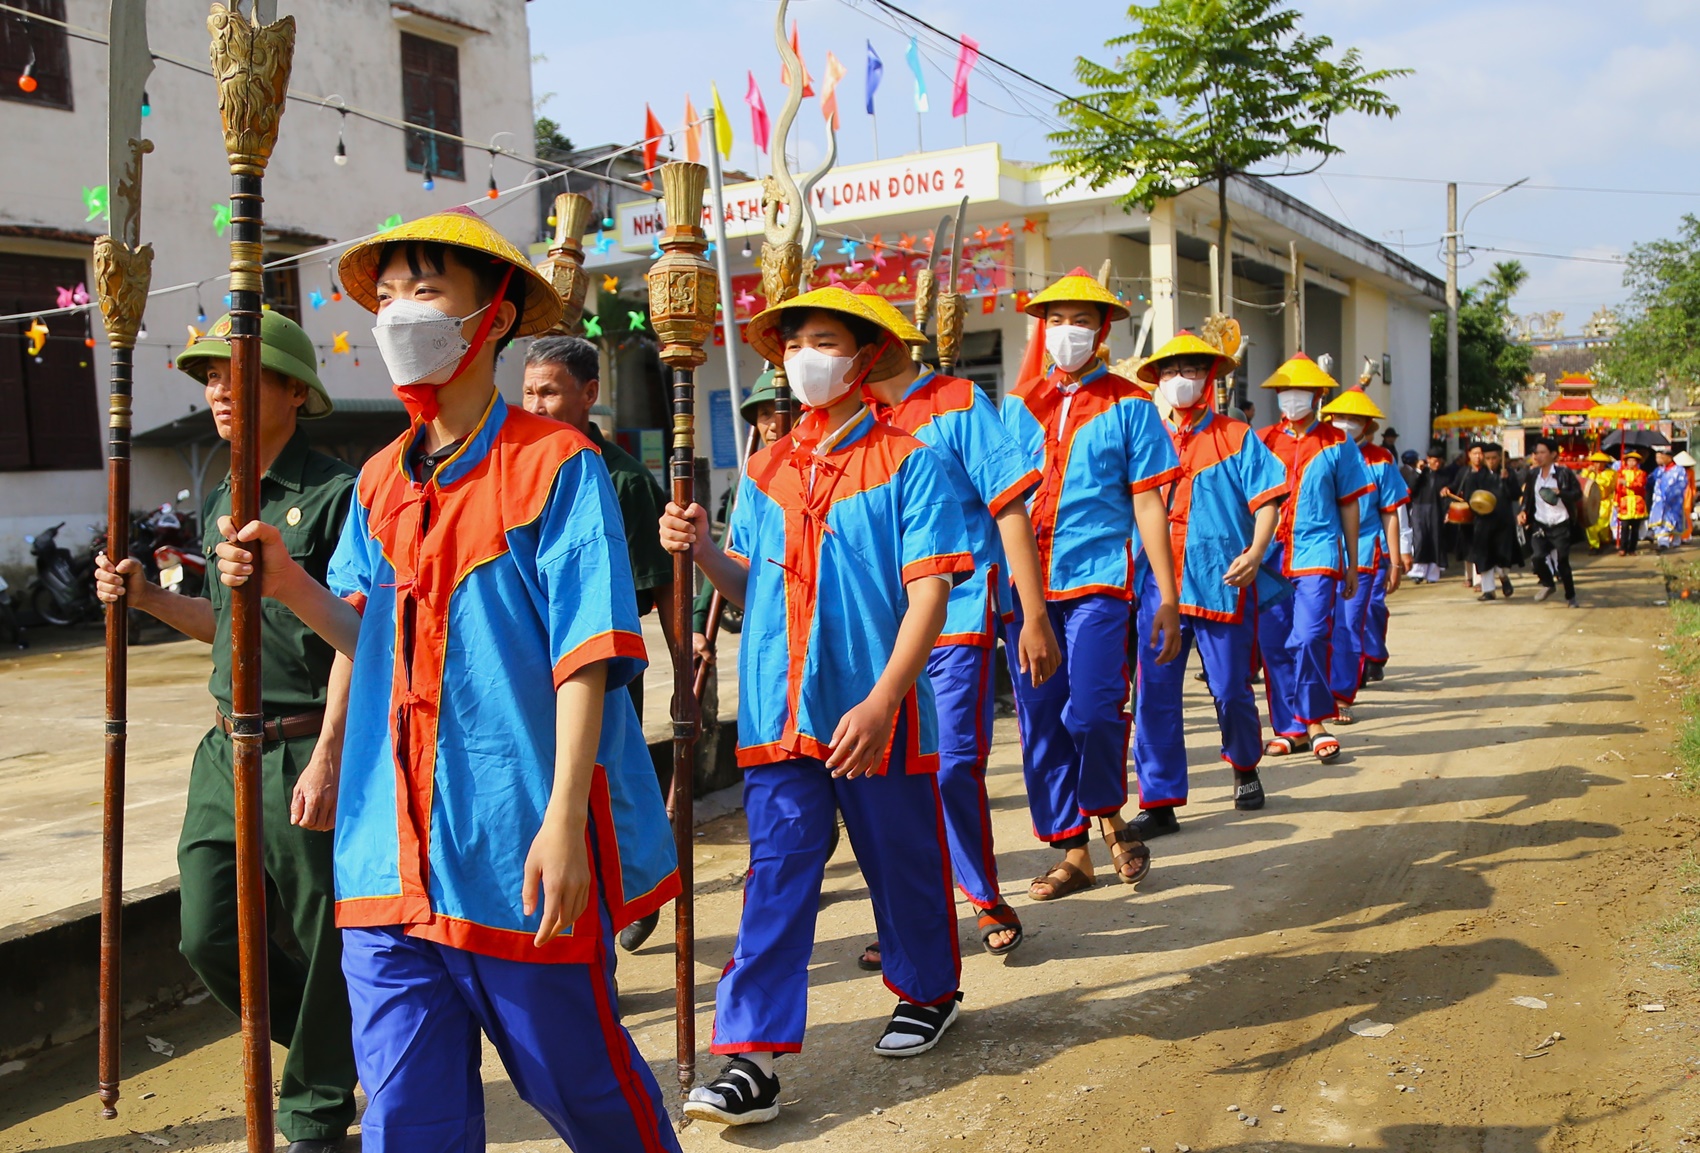 Hàng nghìn người chen chân xem đua ghe tại lễ hội ở làng cổ hơn 500 tuổi - Ảnh 14.